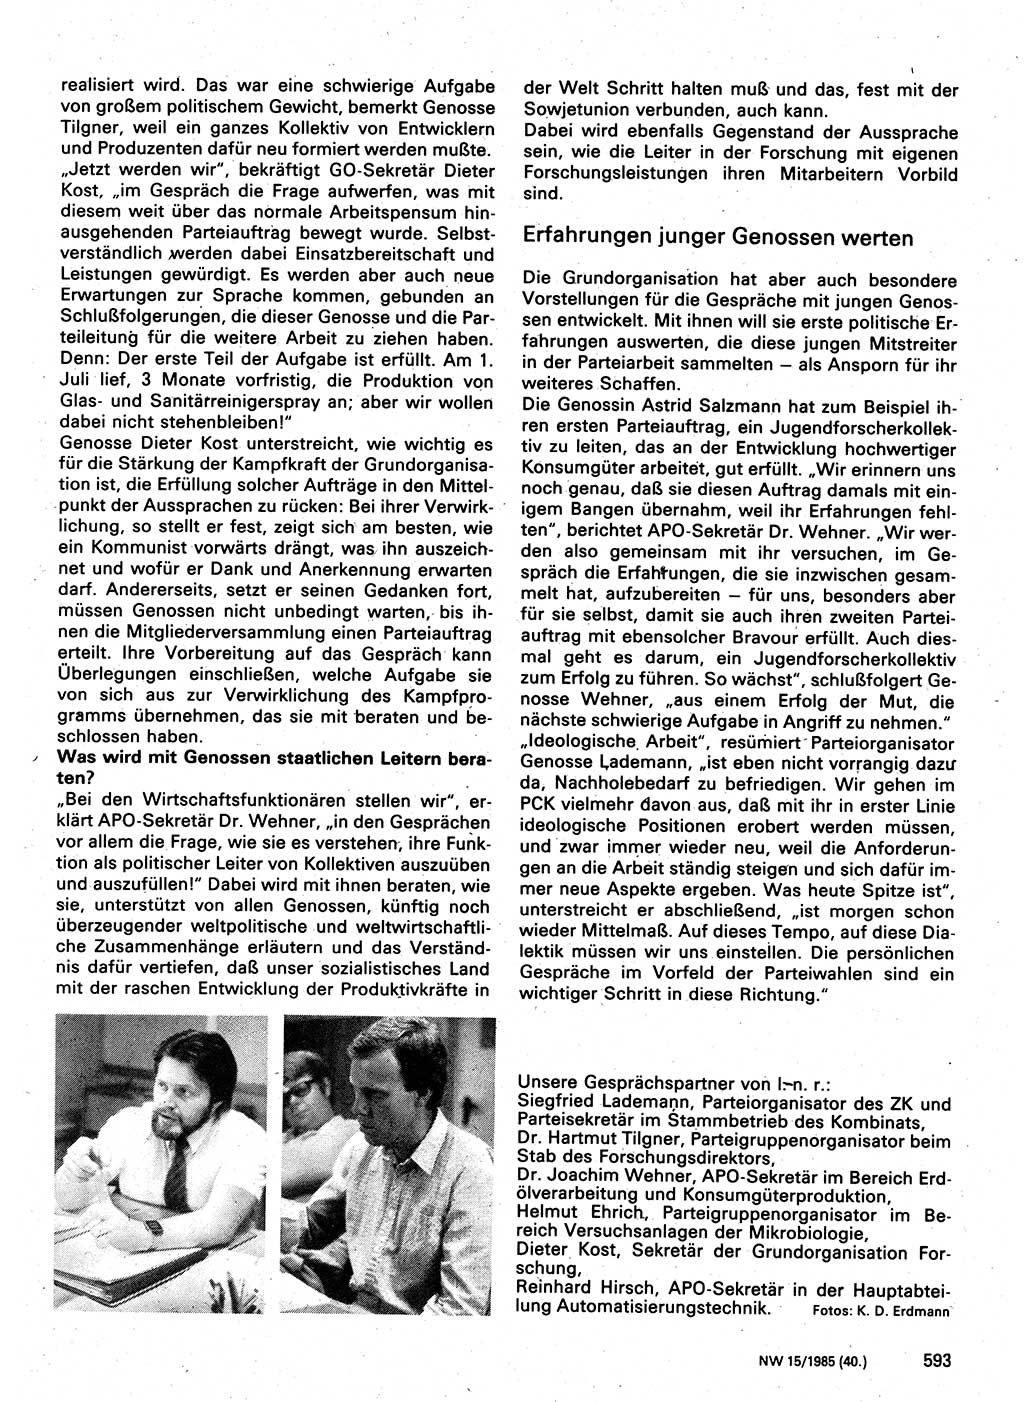 Neuer Weg (NW), Organ des Zentralkomitees (ZK) der SED (Sozialistische Einheitspartei Deutschlands) für Fragen des Parteilebens, 40. Jahrgang [Deutsche Demokratische Republik (DDR)] 1985, Seite 593 (NW ZK SED DDR 1985, S. 593)